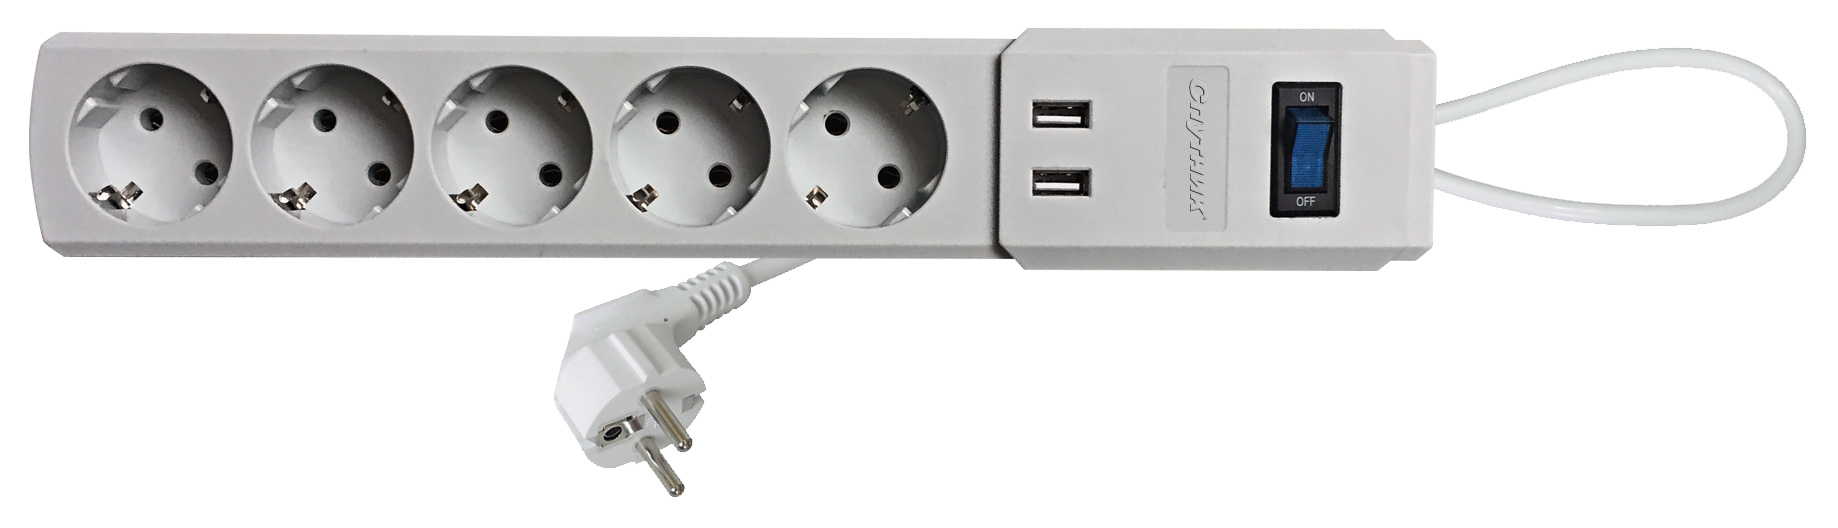 Сетевой фильтр-удлинитель Спутник SP-518 USB, 1,8м, серый